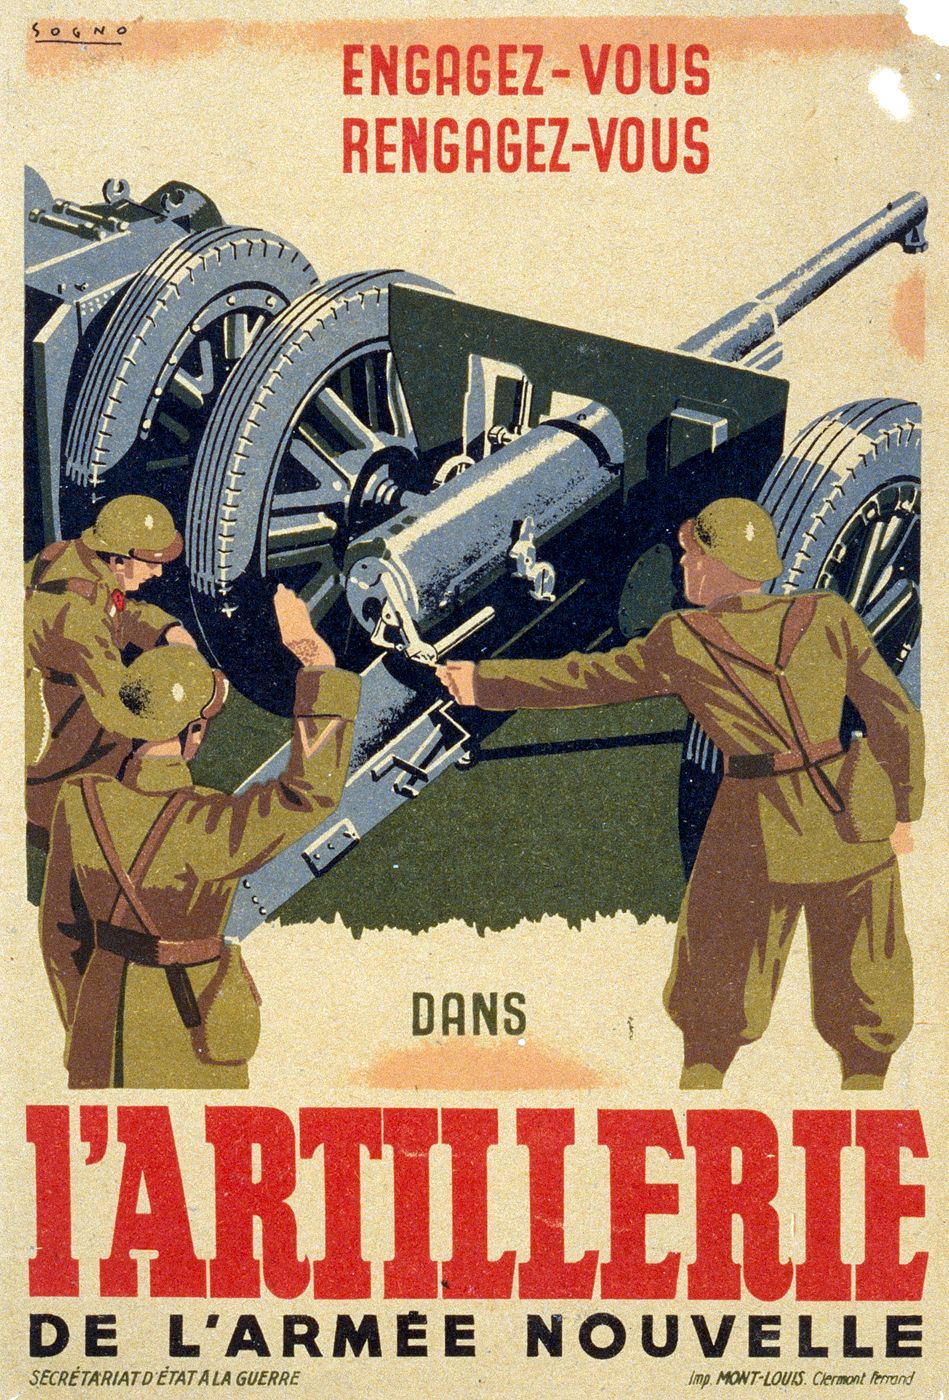 Affiche de recrutement de l'armée de l'armistice - L'ARTILLERIE.